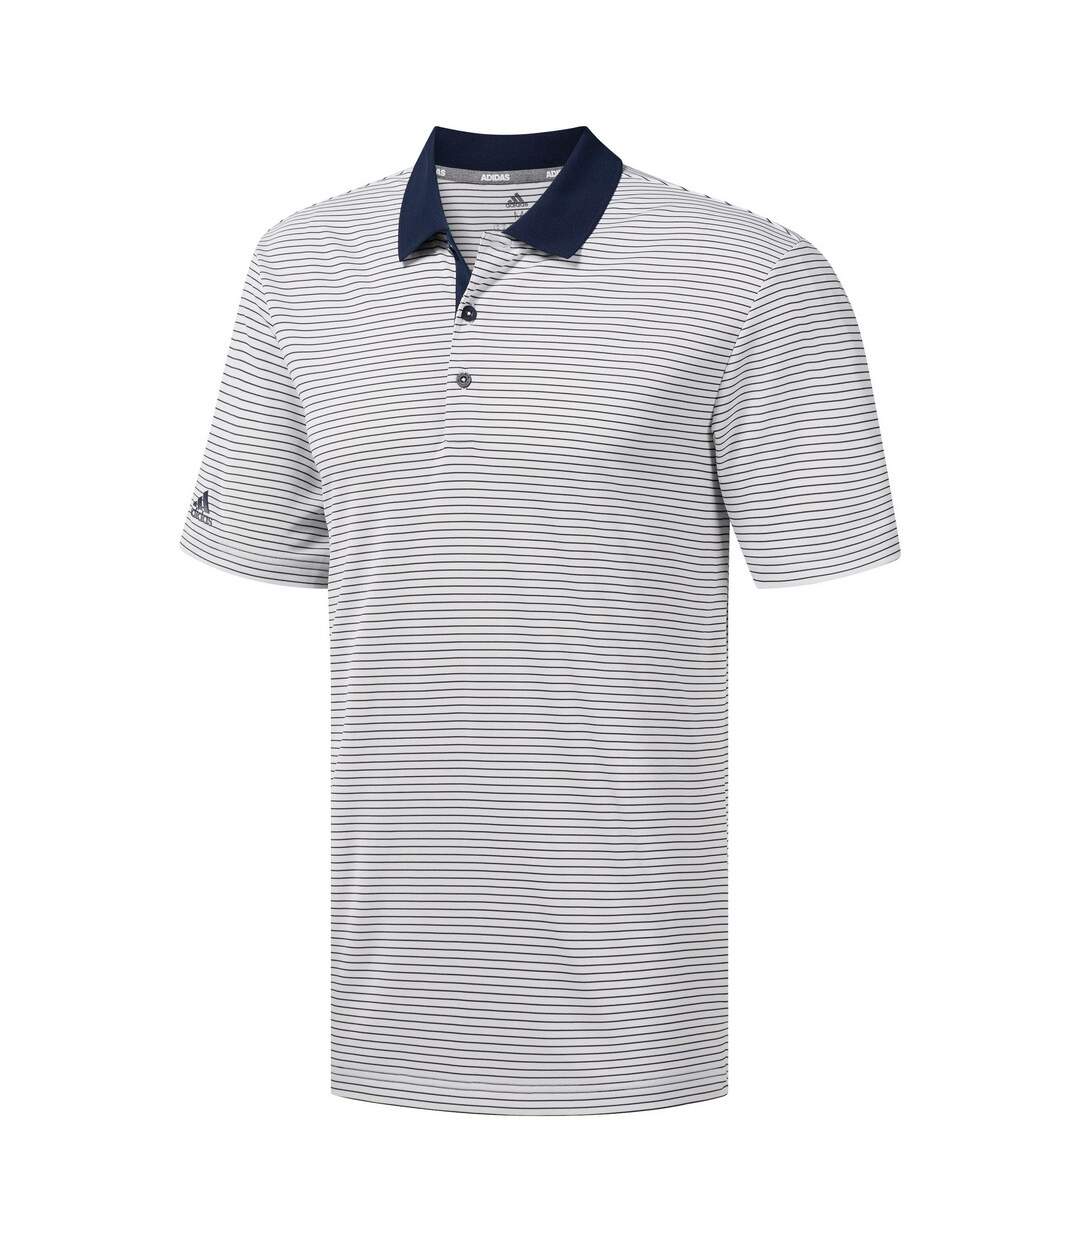 Adidas Mens 2-Colour Stripe Polo (White/Navy) - UTRW7488